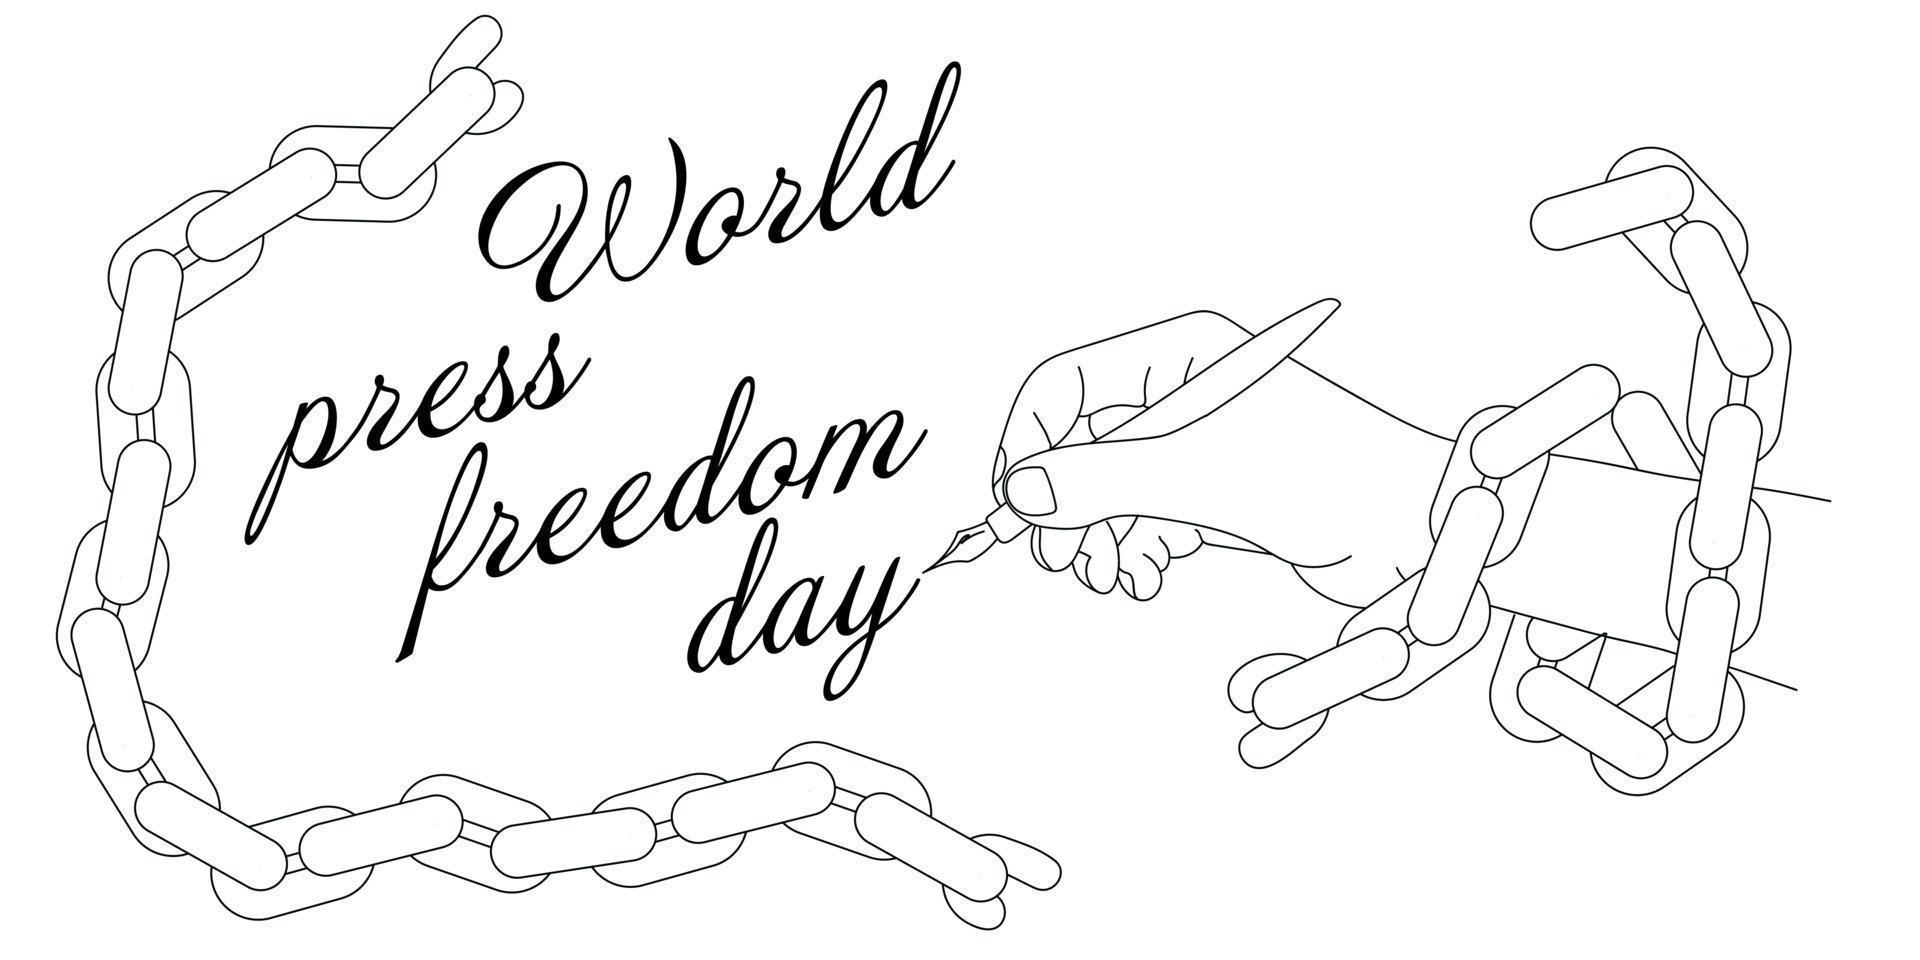 banier voor de wereld druk op vrijheid dag -kunnen 3. een contour tekening van een hand- gedekt met een keten met een fontein pen schrijft een inscriptie. zwart en wit illustratie. een gemakkelijk banier naar afdrukken vector